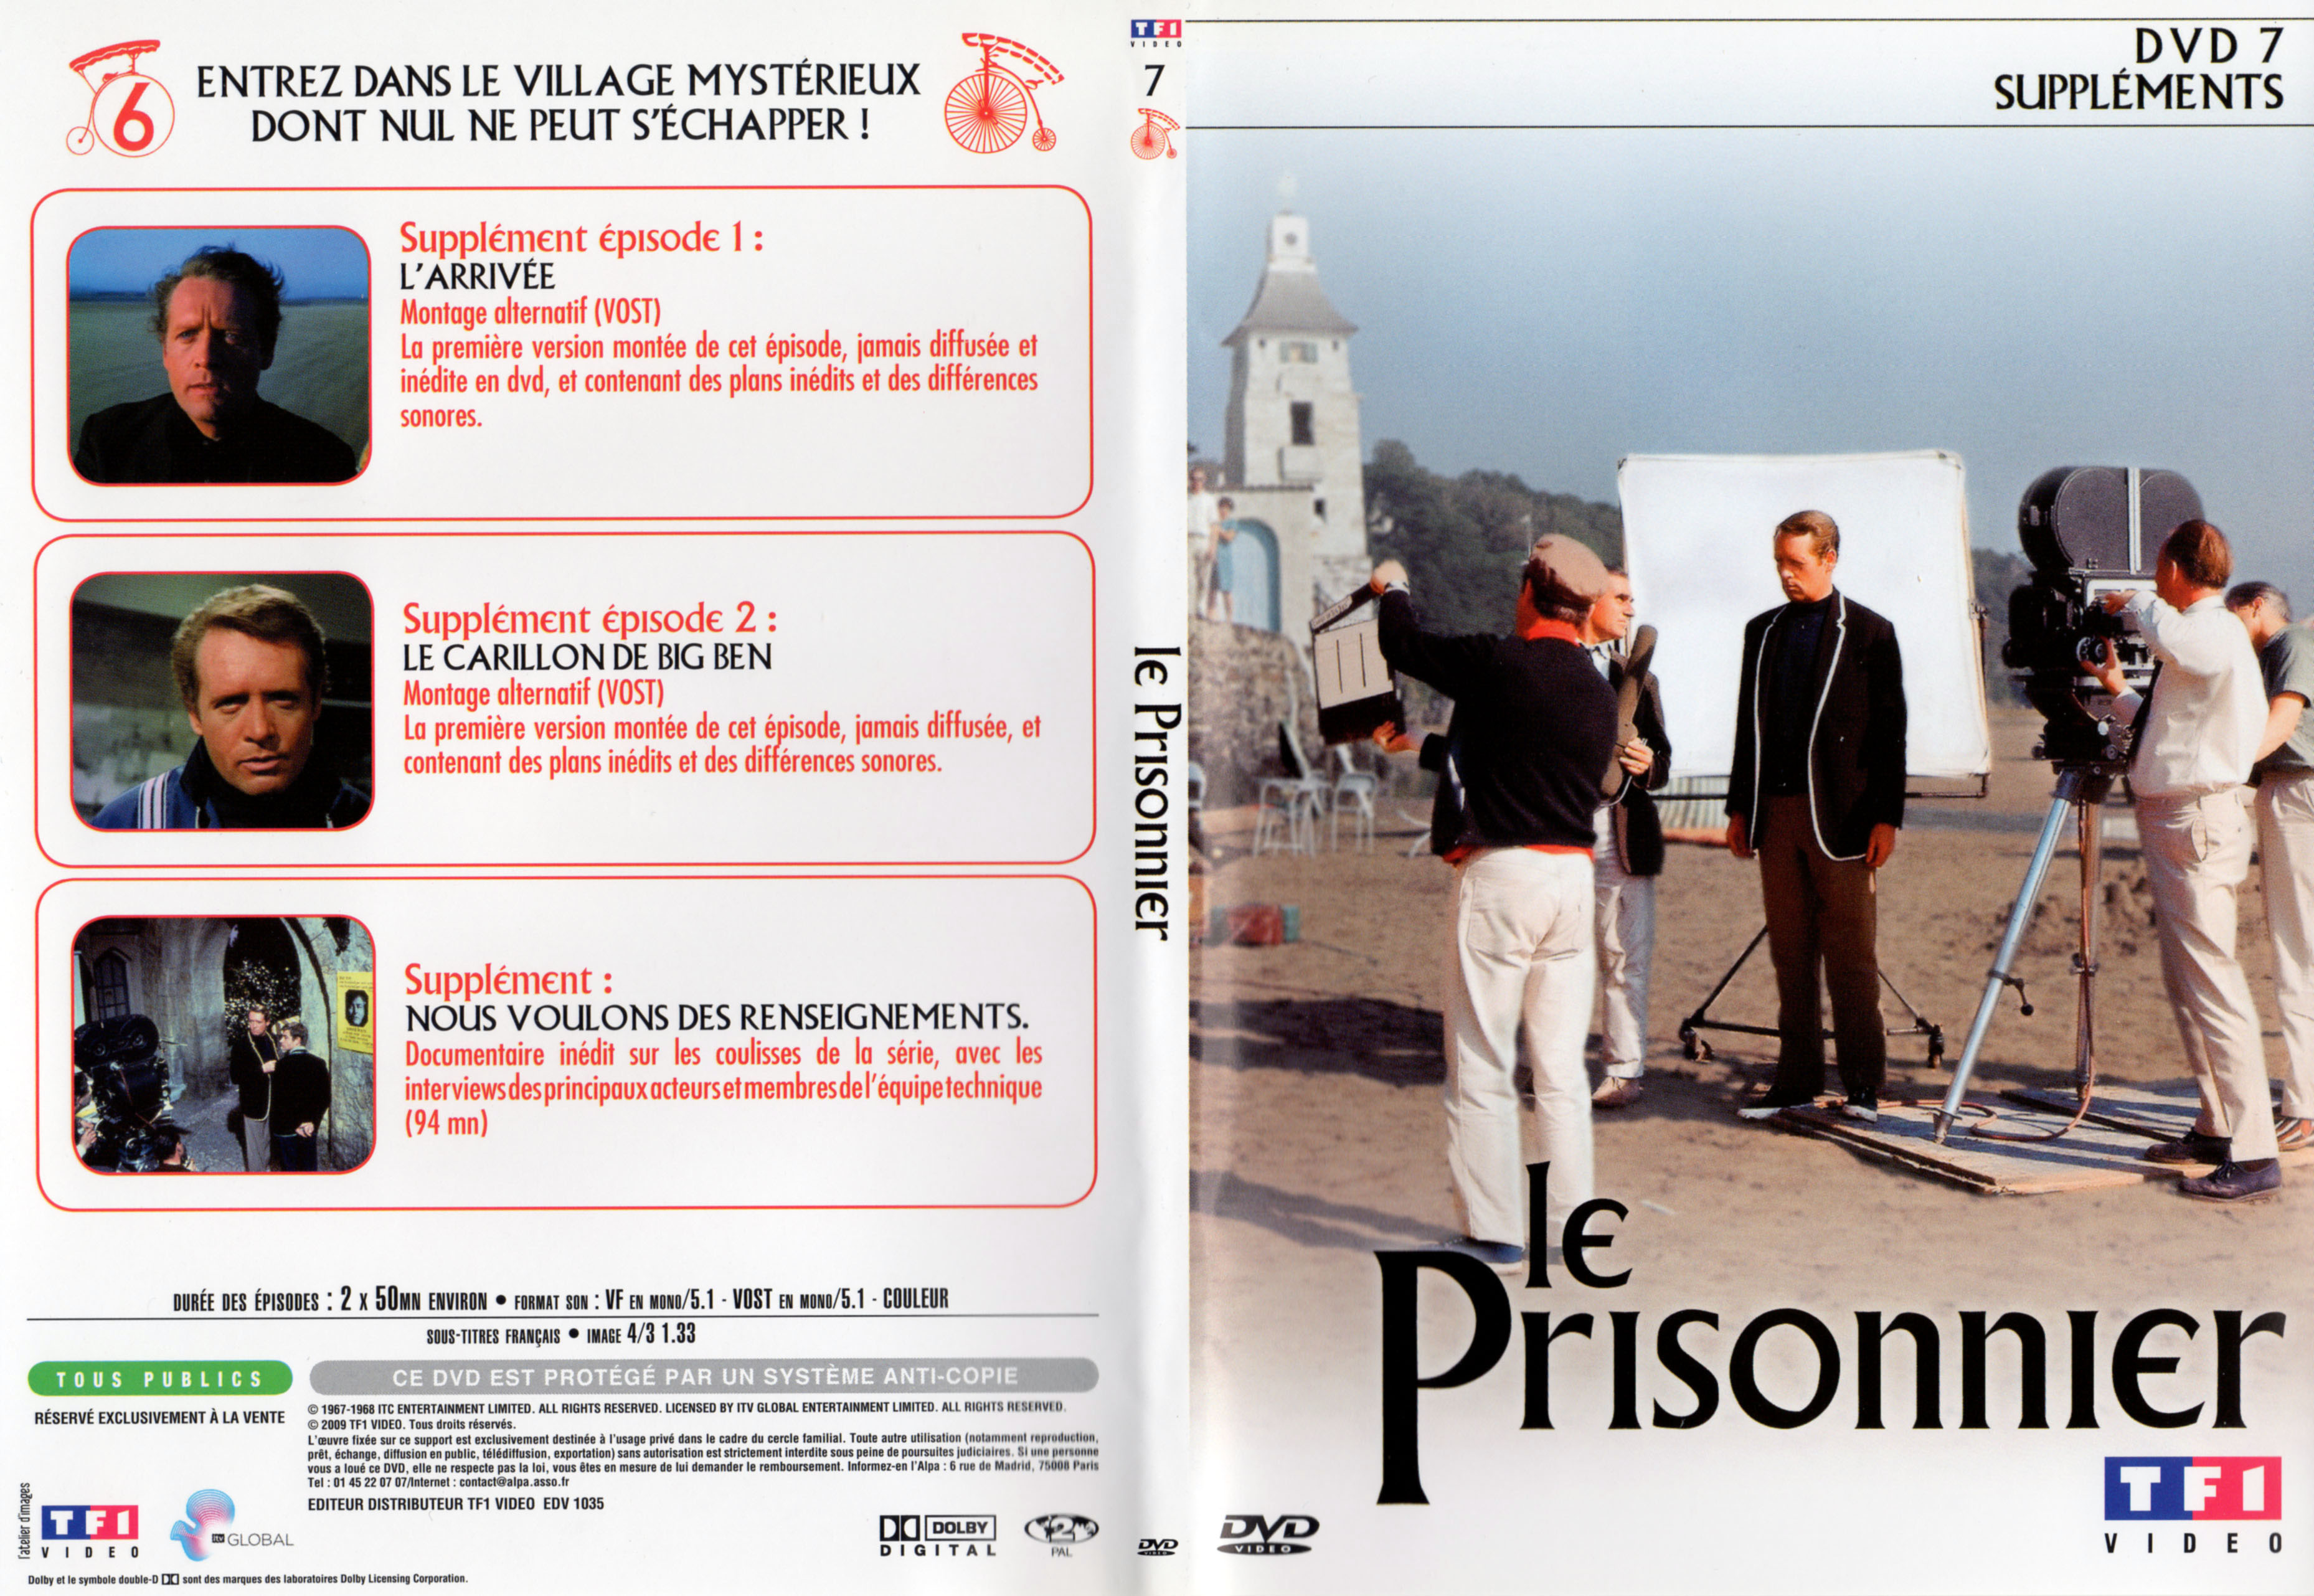 Jaquette DVD Le prisonnier DVD 7